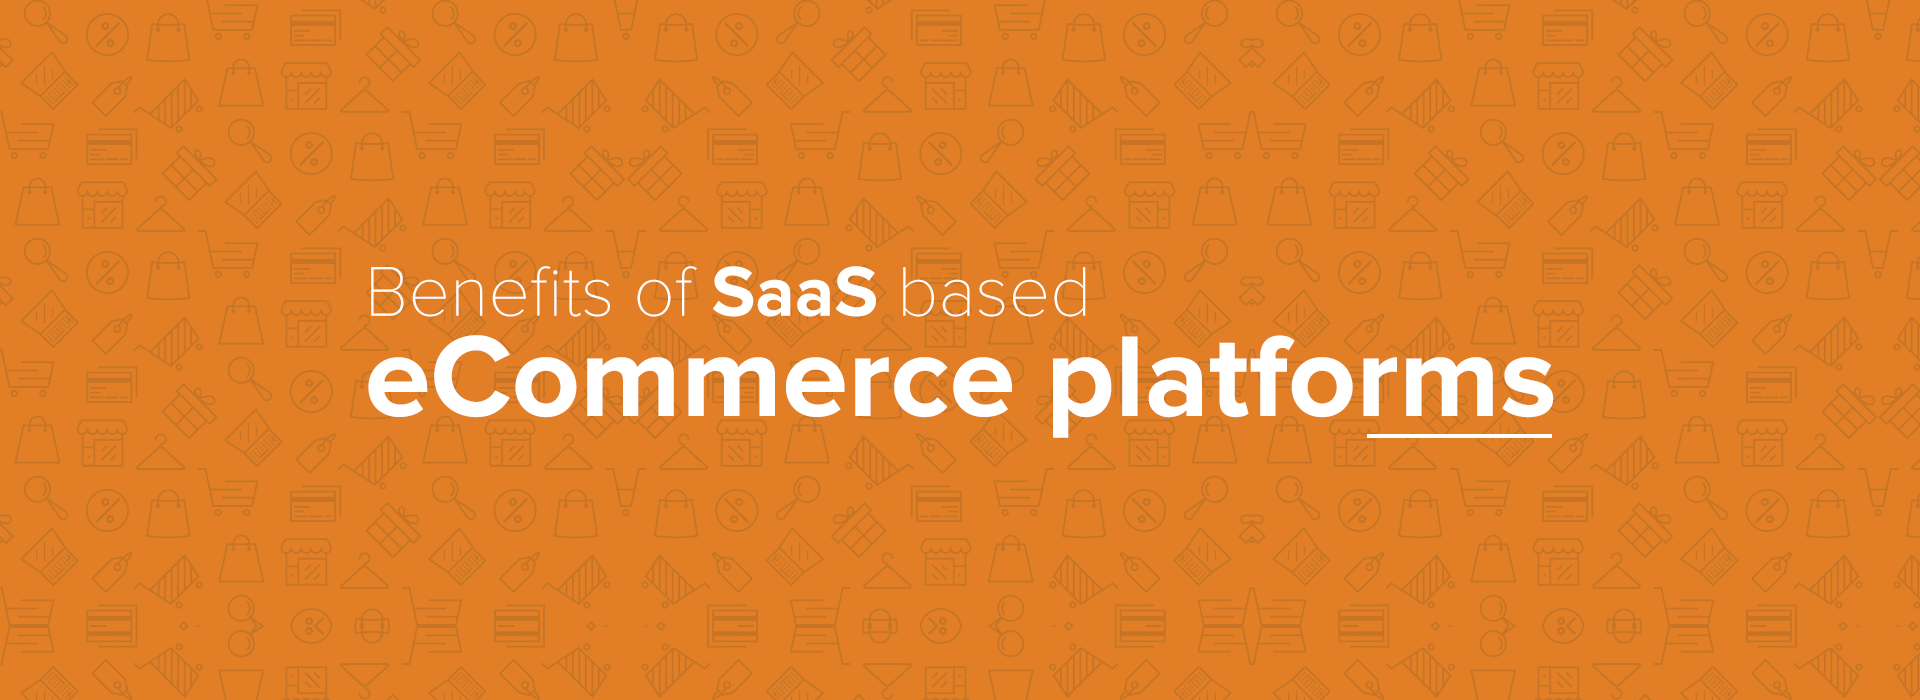 benefits-of-saas-based-ecommerce-platforms-blog-header